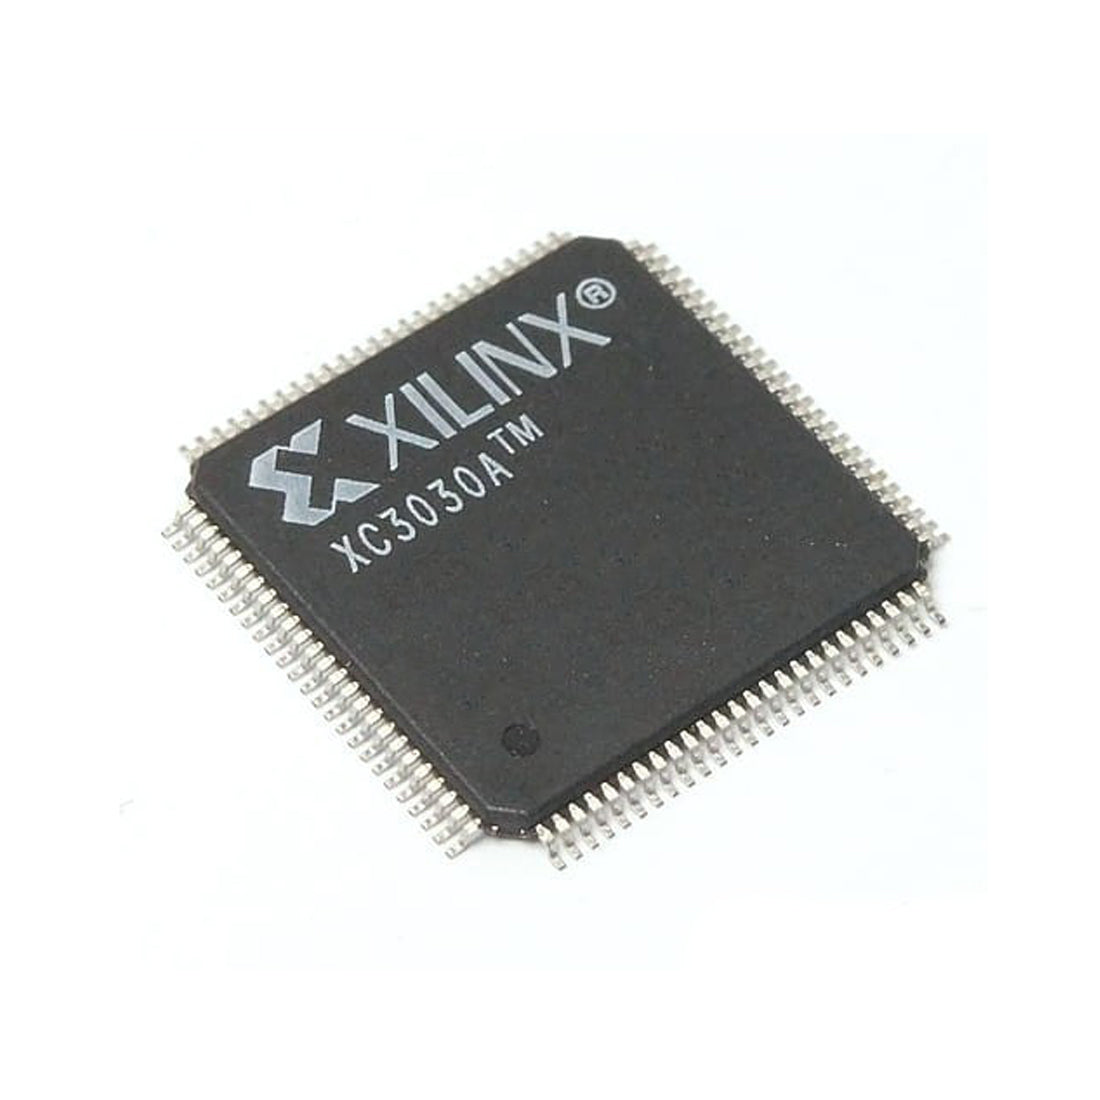 Xilinx XC3030A componente elettronico, circuito integrato, transistor